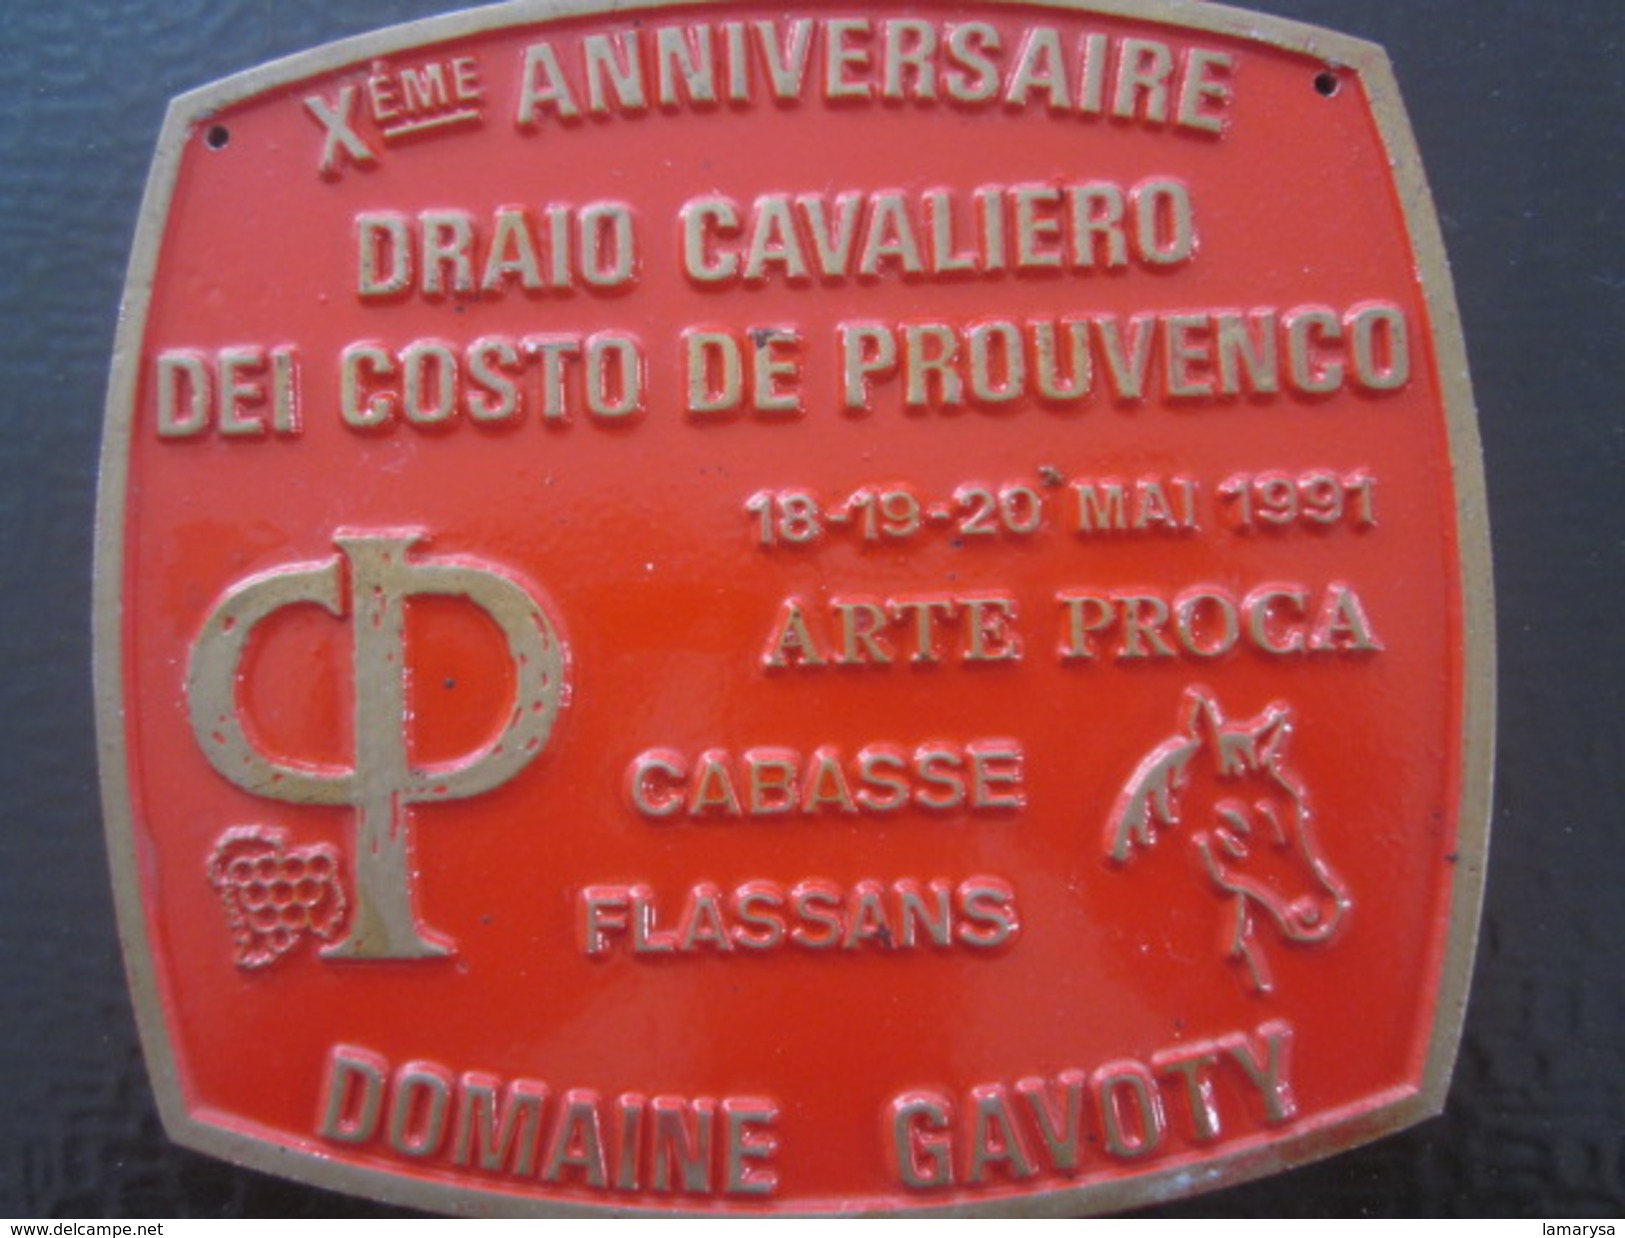 CABASSE FLASSANS Xé AN DRAIO CAVALIERO DEI COSTA DE PROUVENCO-F.F.E.-Équestre Equitation Plaque Souvenir Commémorative - Equitation